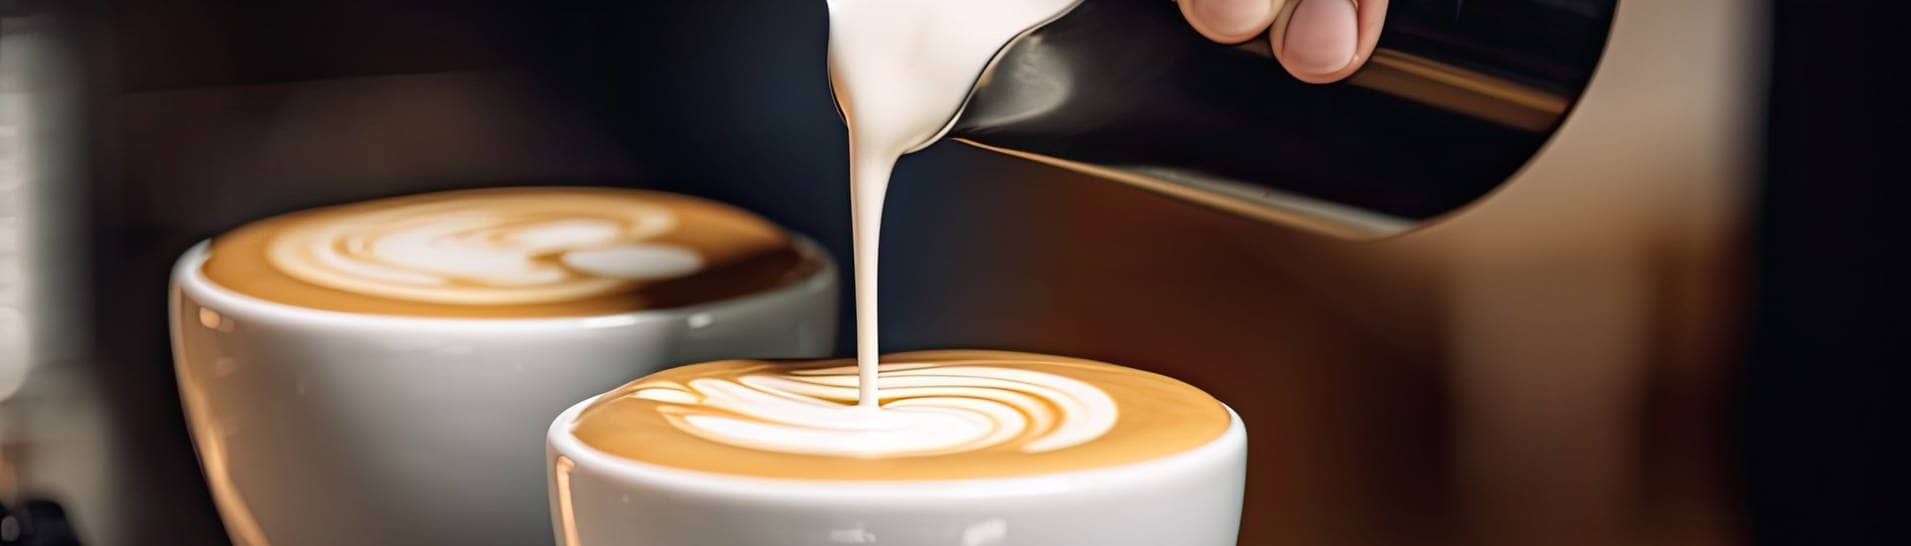 Barista gießt aufgeschäumte Milch in zwei Kaffeetassen